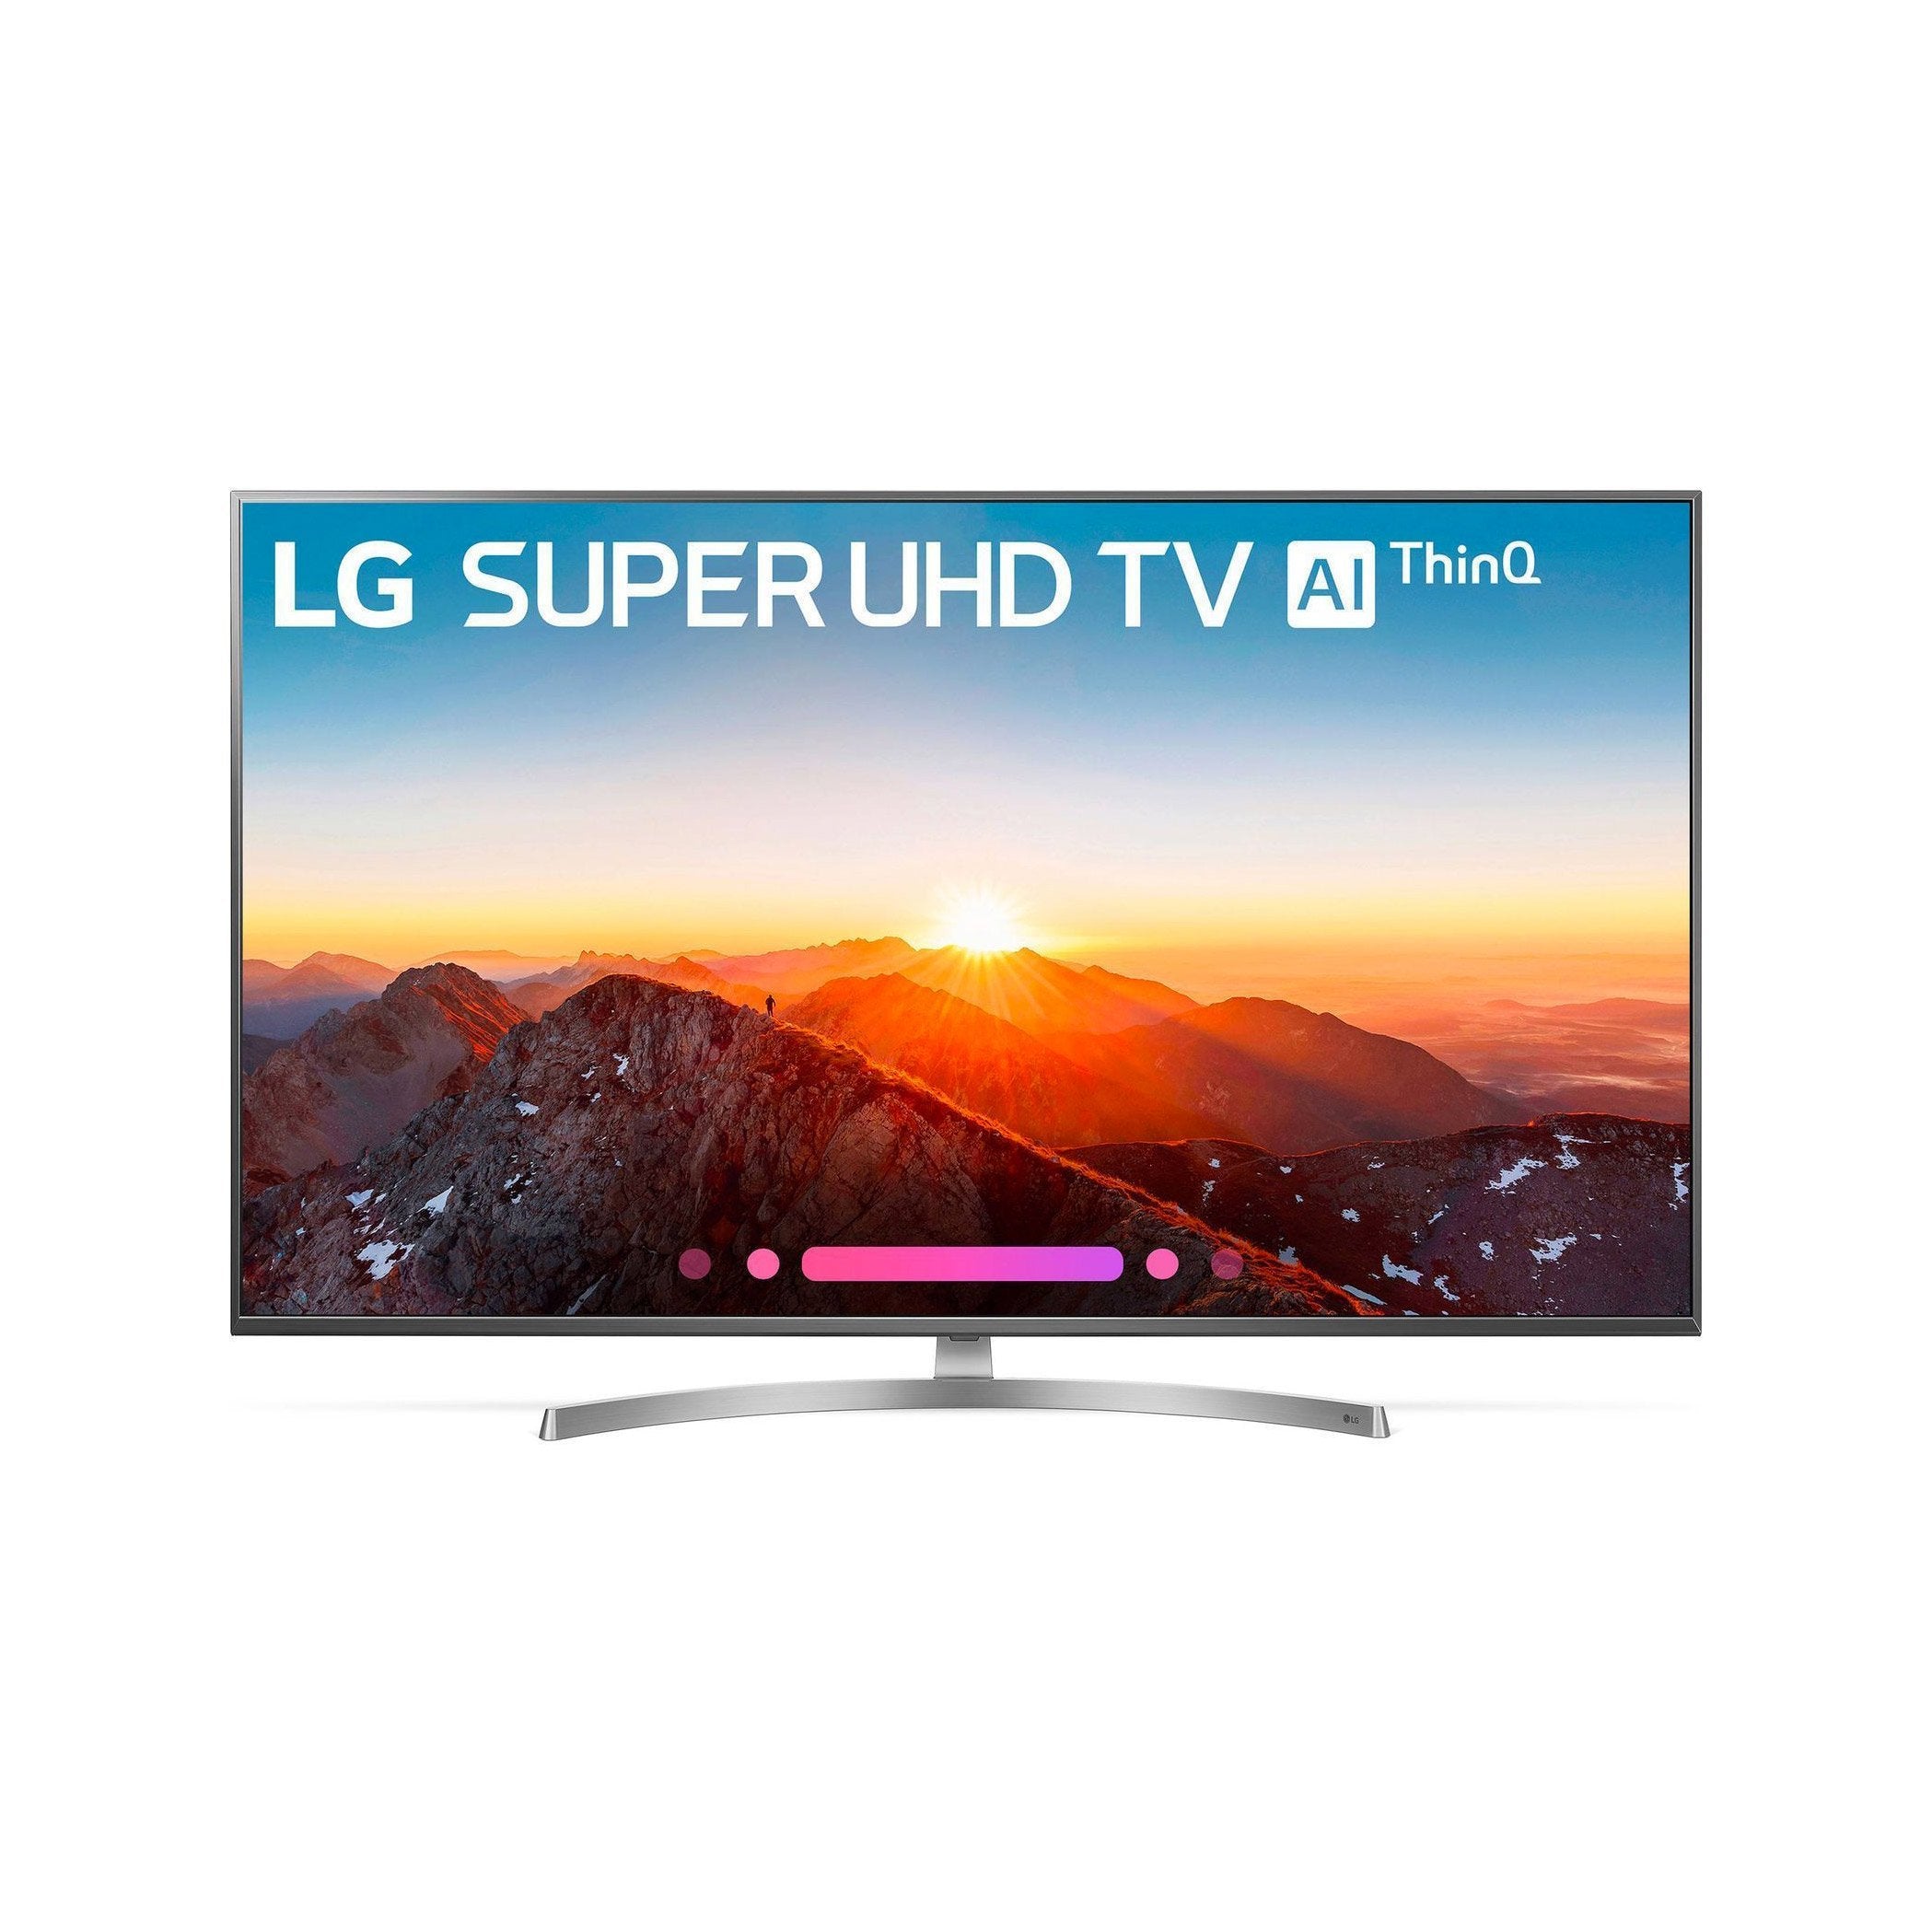 LG 49SK8000PUA 49-Inch 4K Ultra HD Smart LED TV